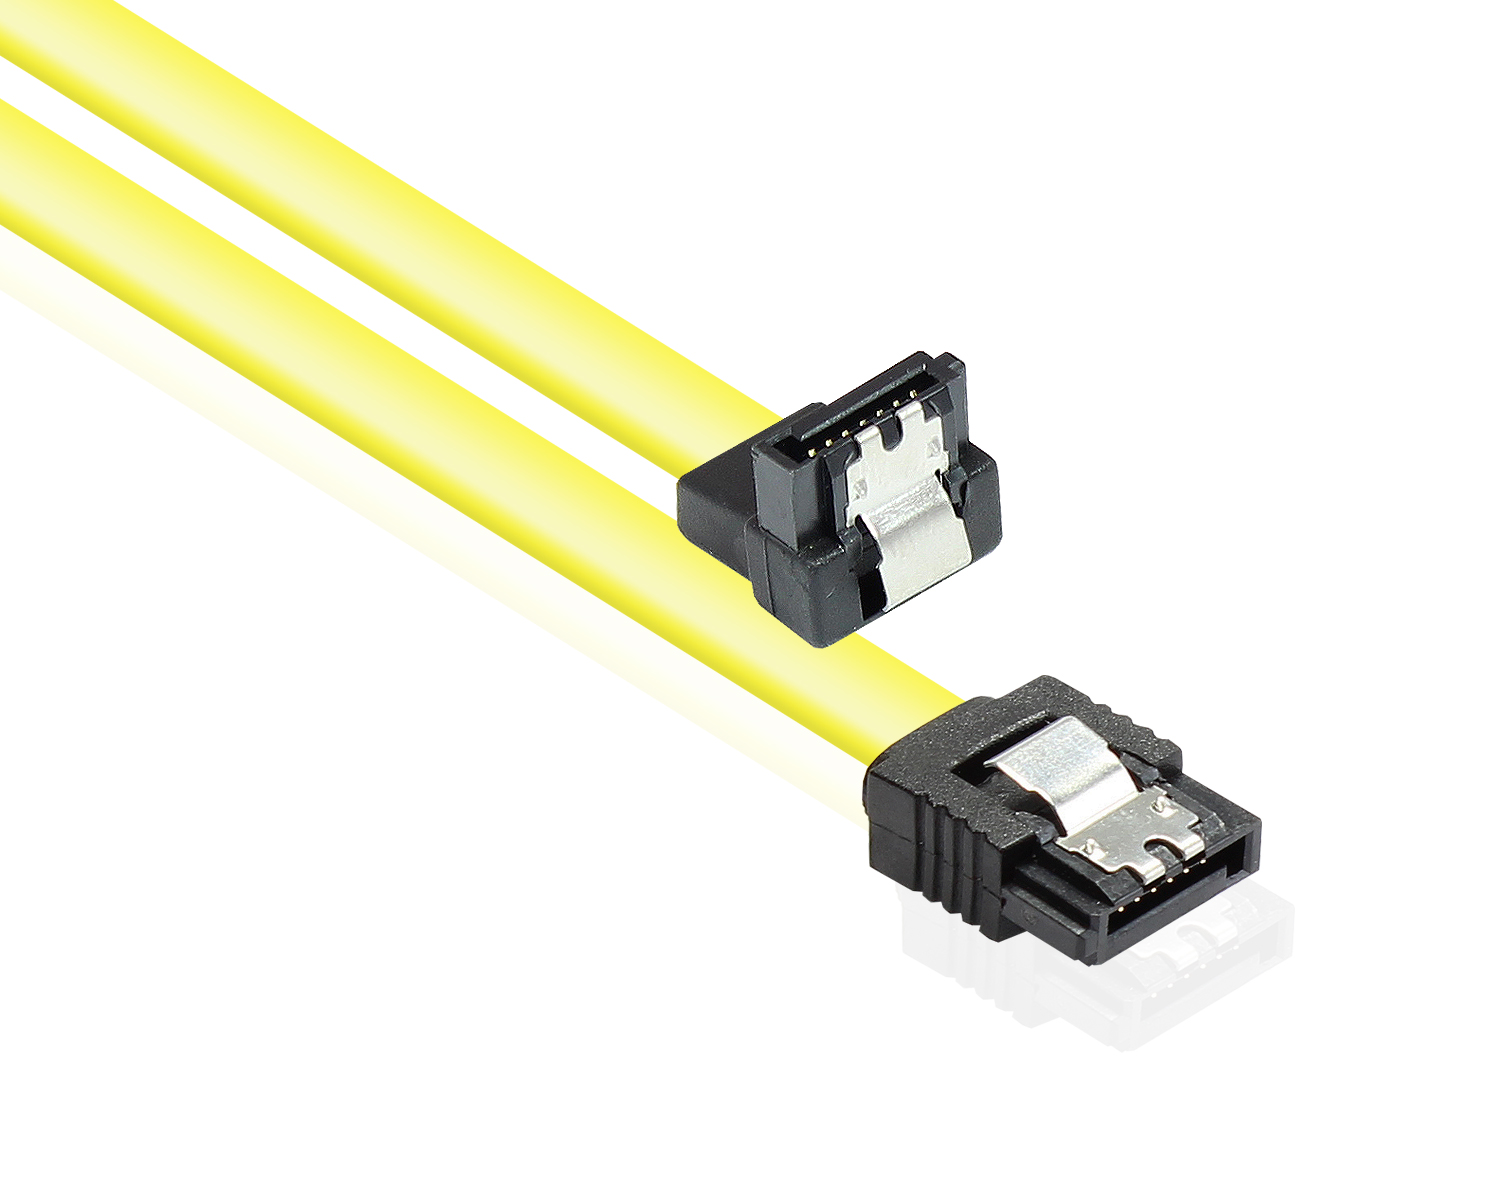 Anschlusskabel SATA 6 Gb/s mit Metallclip, einseitig gewinkelt, gelb, 0,3m, Good Connections®